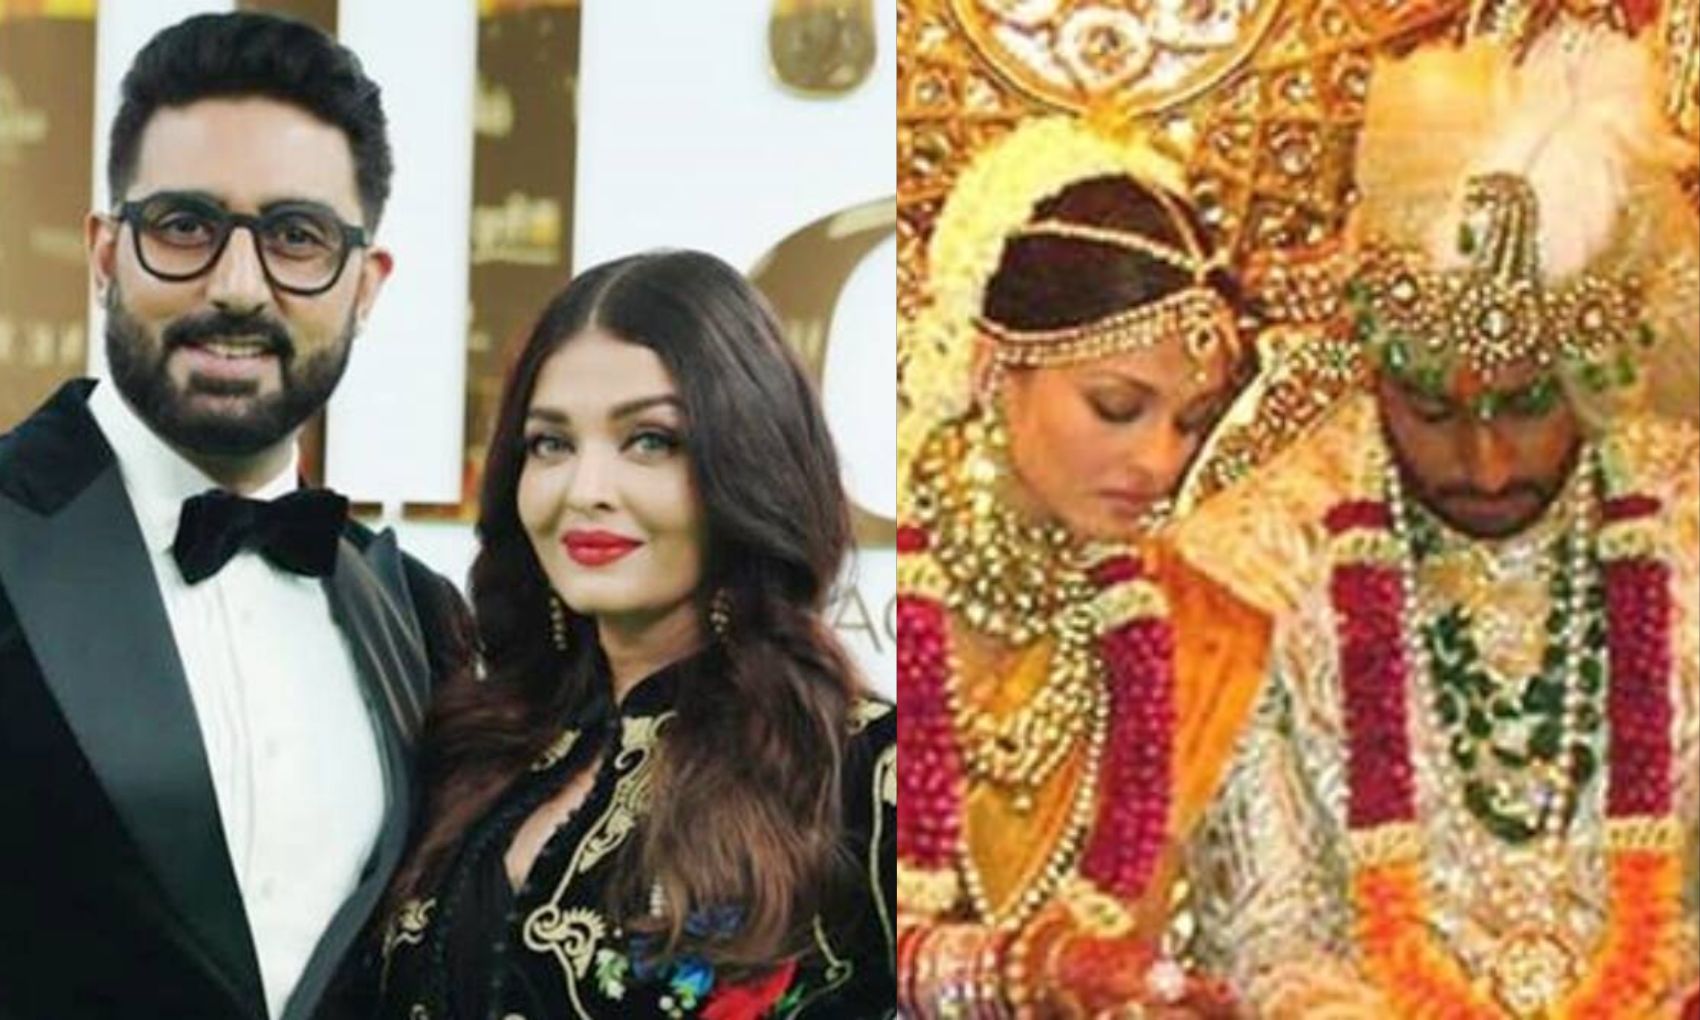 अभिषेक बच्चन की शादी रुकवाने के लिए जाह्नवी कपूर ने काट ली थी अपनी नस, बड़ी सच्चाई आई सामने!